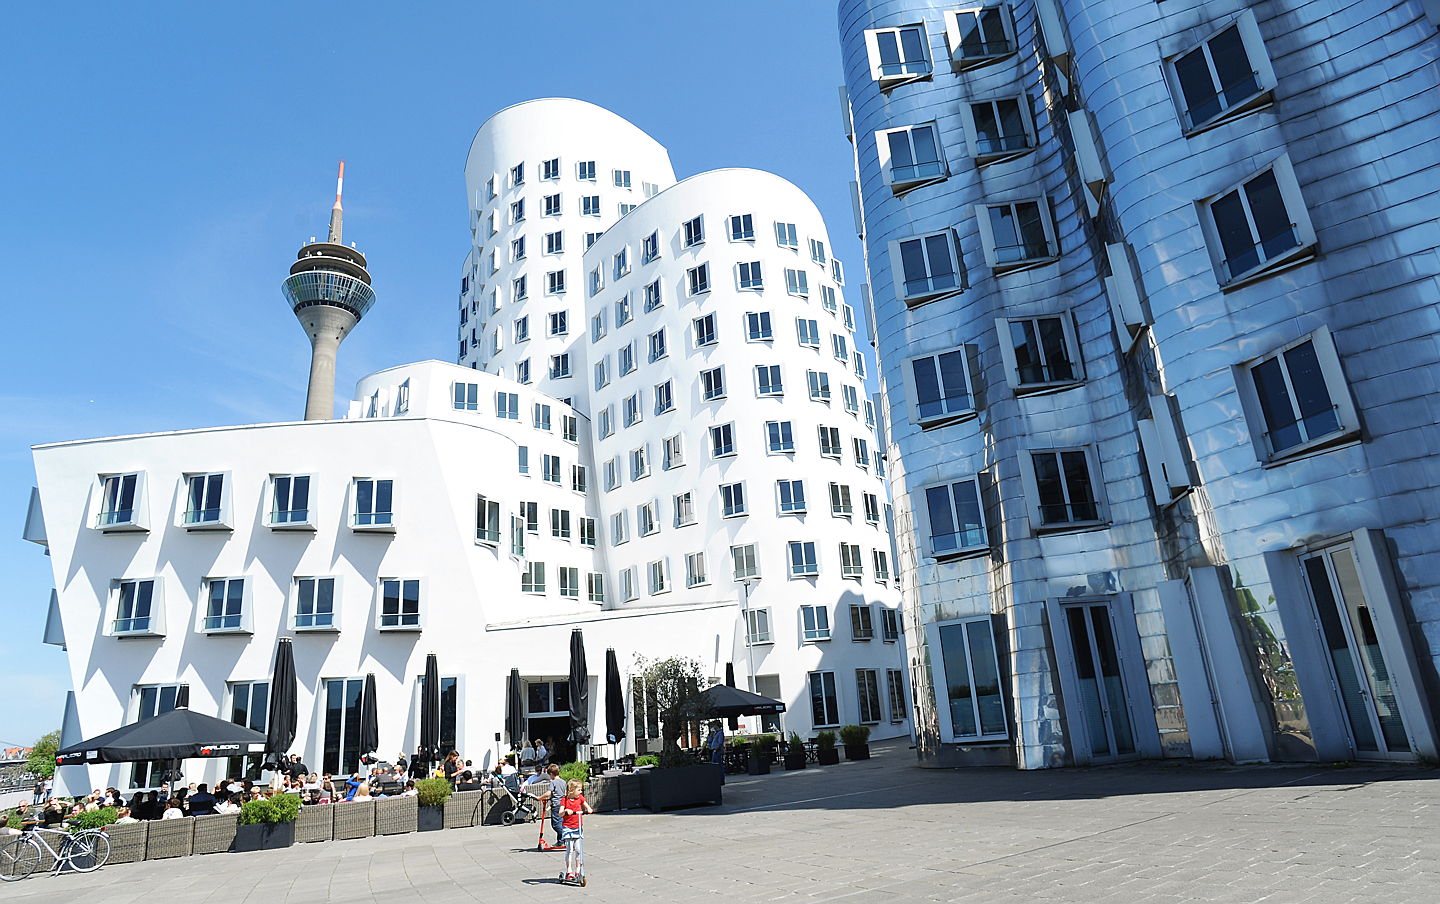  Düsseldorf
- ileadmin_assets_bilder_dmt_bildarchiv_public_Medienhafen_Gehrybauten 3.jpg